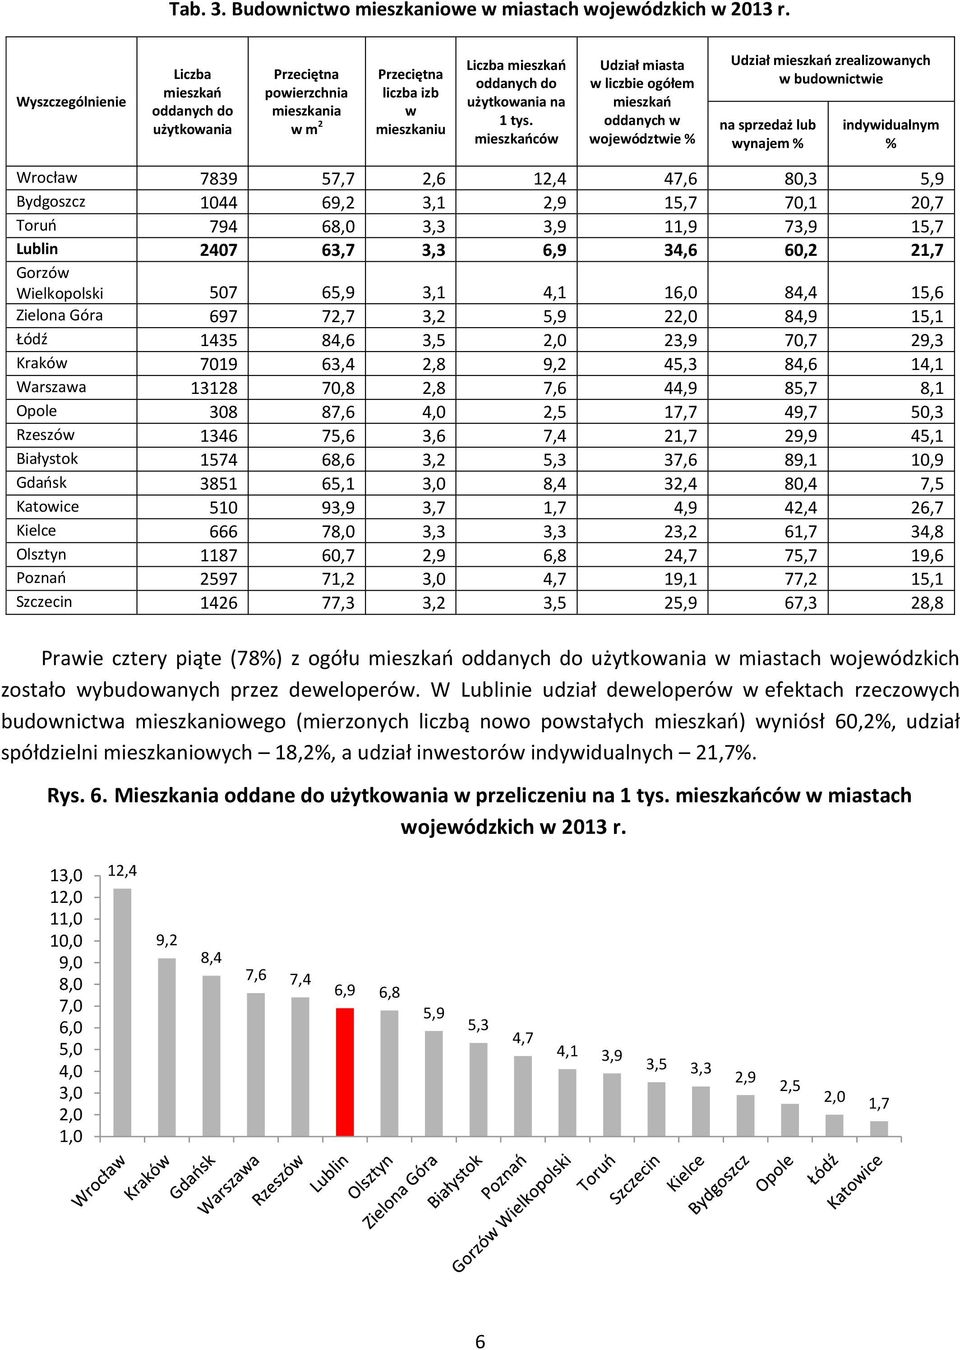 mieszkańców Udział miasta w liczbie ogółem mieszkań oddanych w województwie % Udział mieszkań zrealizowanych w budownictwie na sprzedaż lub wynajem % indywidualnym % Wrocław 7839 57,7 2,6 12,4 47,6